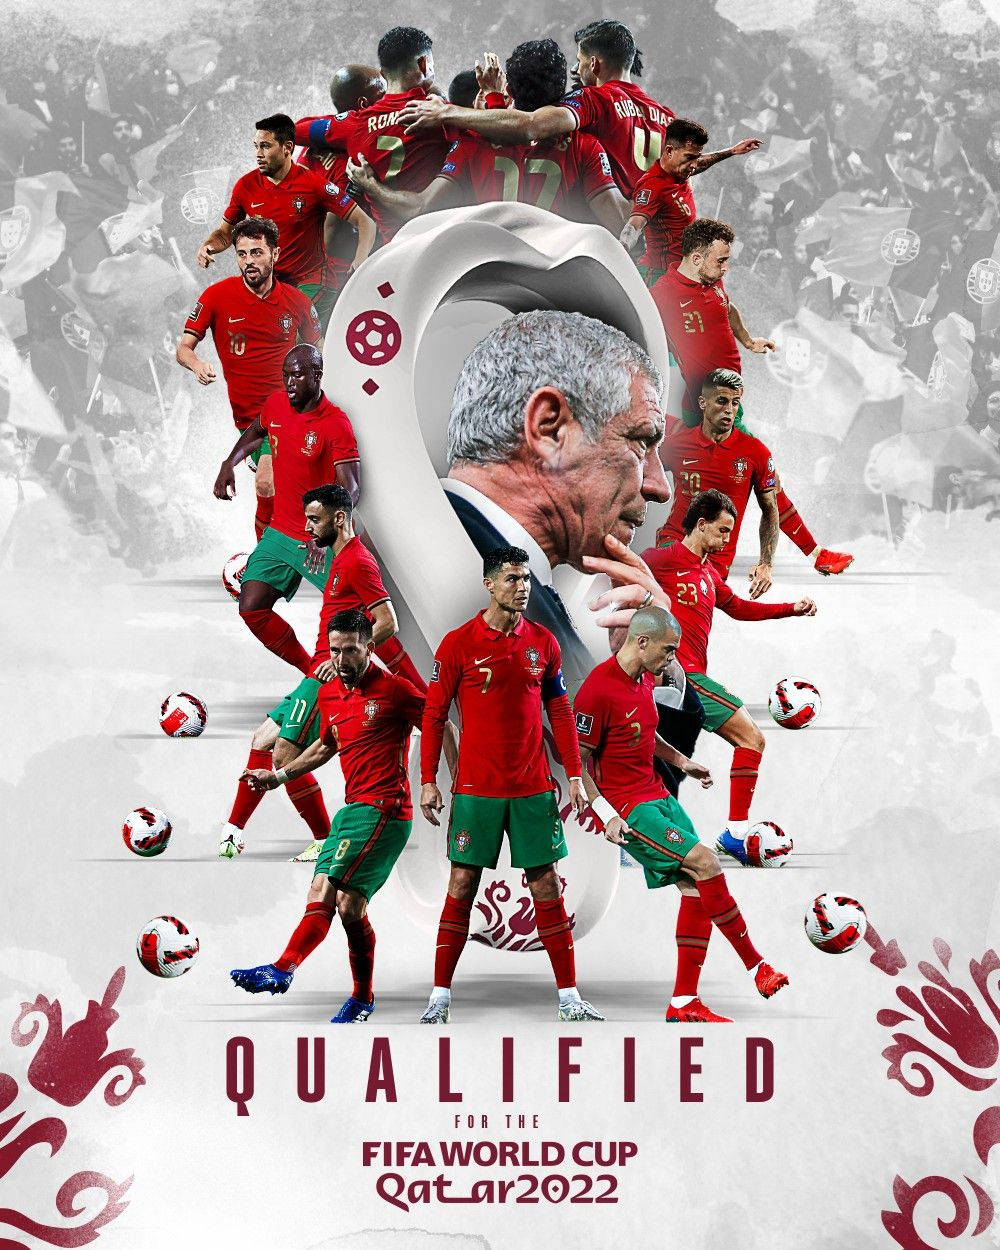 Kvalificeradkonst För Portugals Landslag I Fotboll Wallpaper